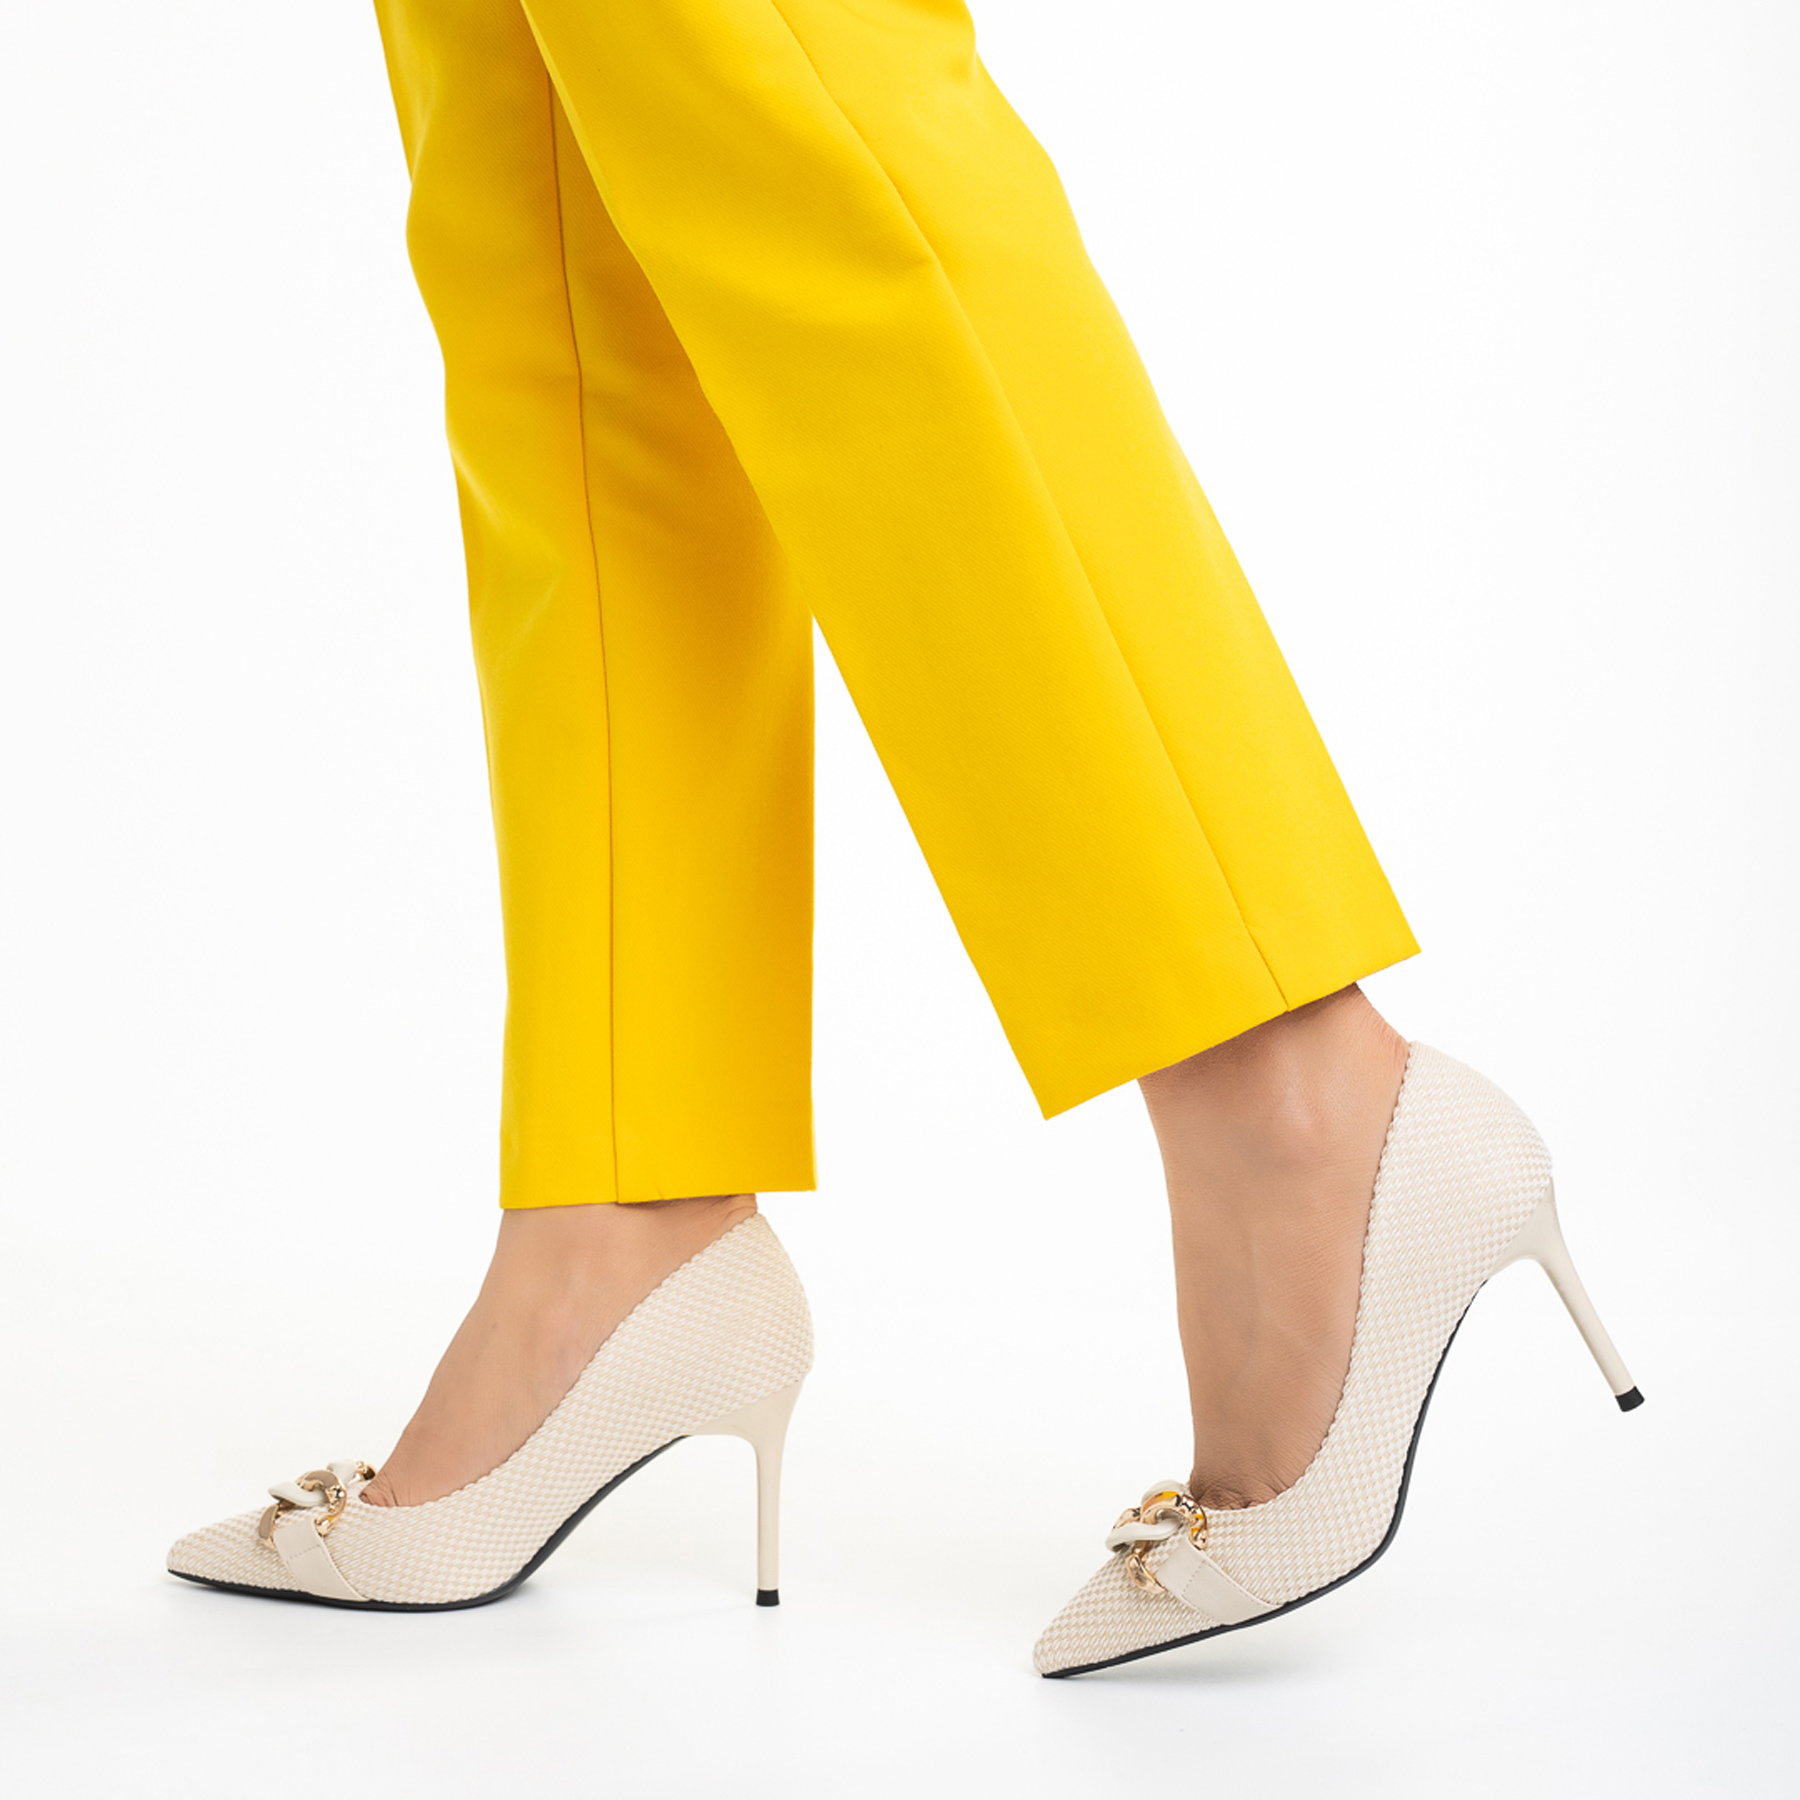 Rosette bézs női cipő, textil anyagból készült, 3 - Kalapod.hu